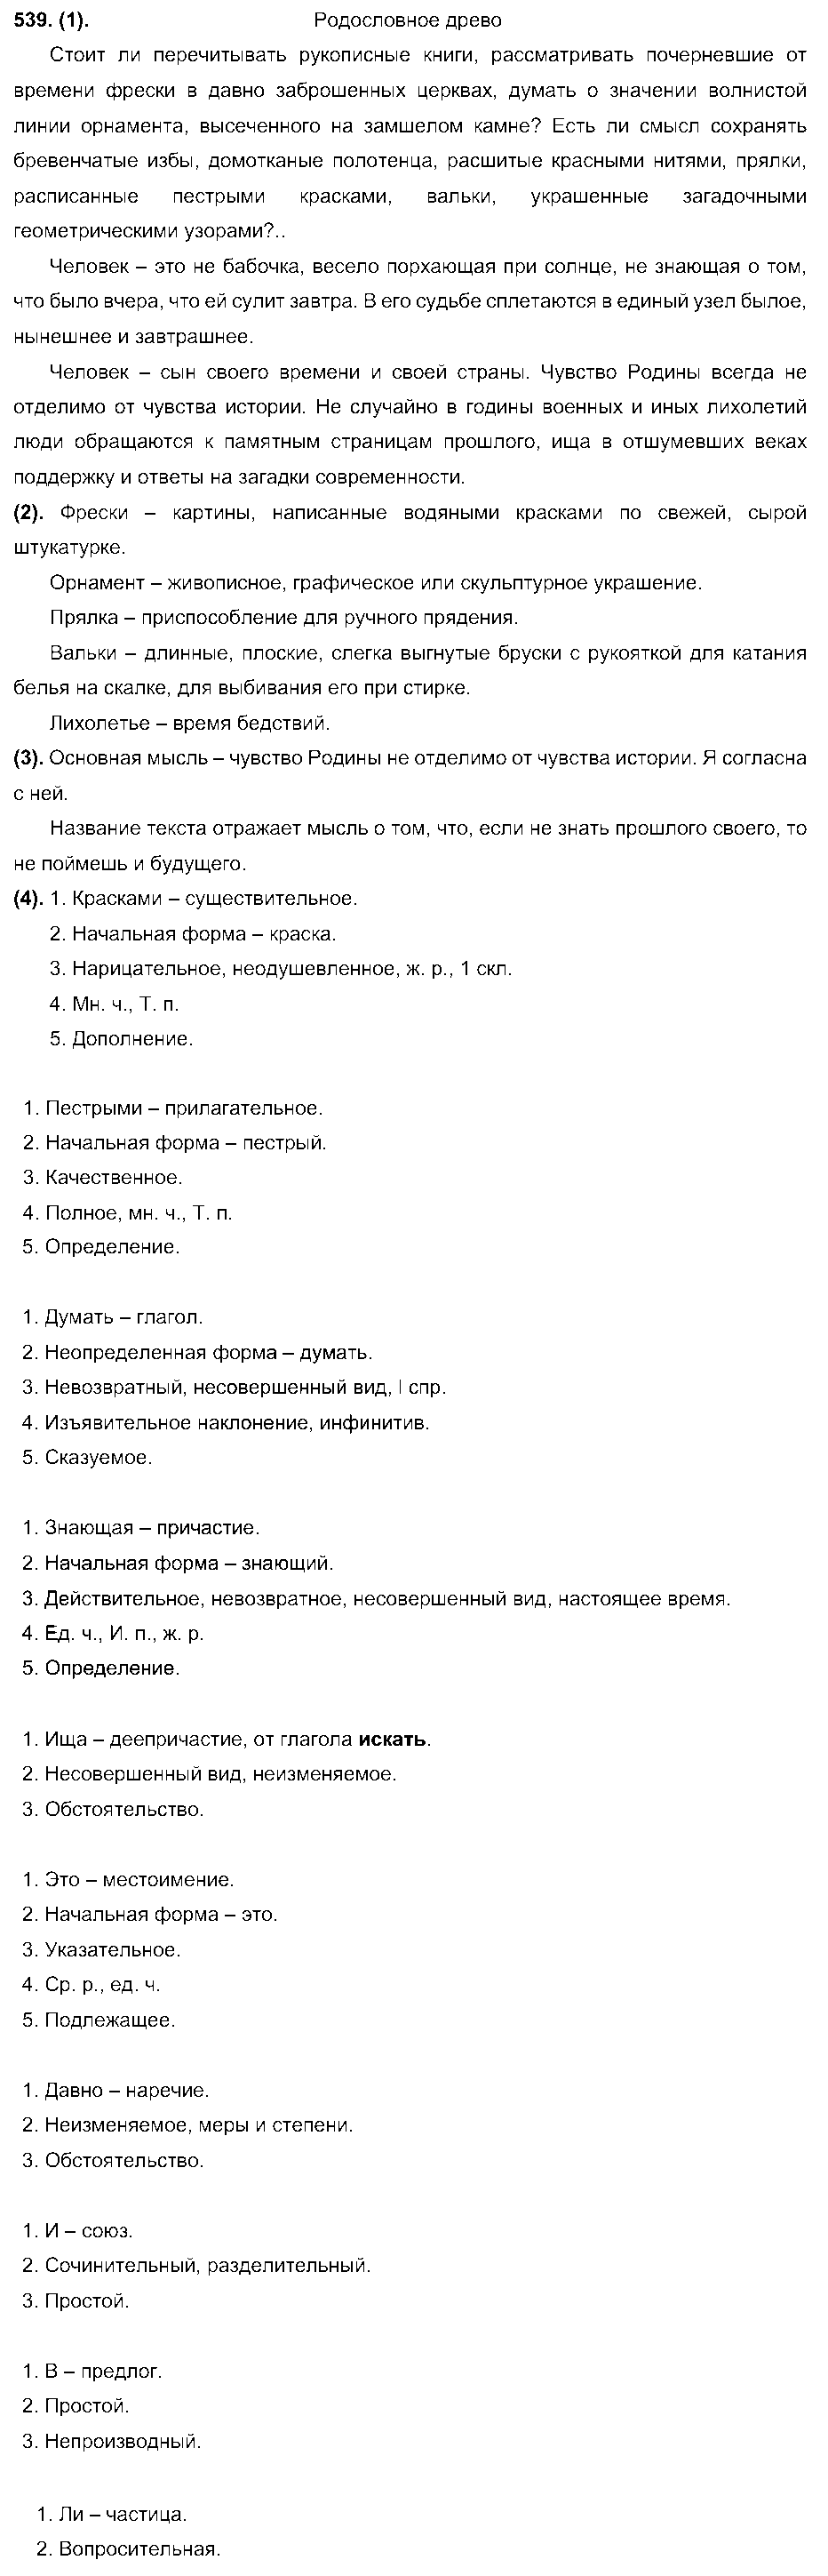 ГДЗ Русский язык 7 класс - 539